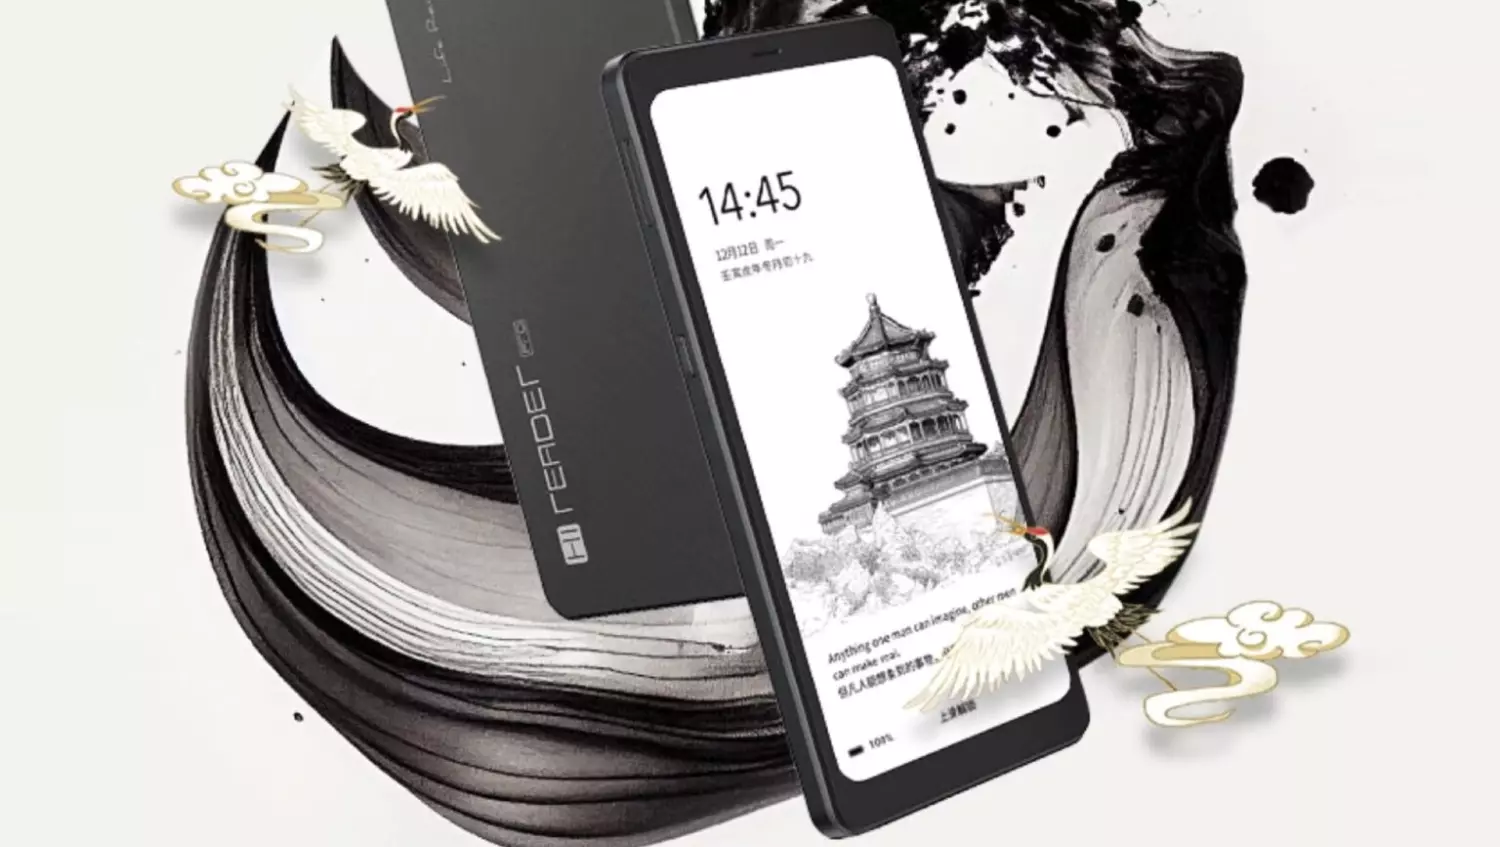 На фото: смартфон-электронная книга Hisense Hi Reader Pro (Hisense A9 Reader Edition). Купить гаджет «два в одном» пока затруднительно